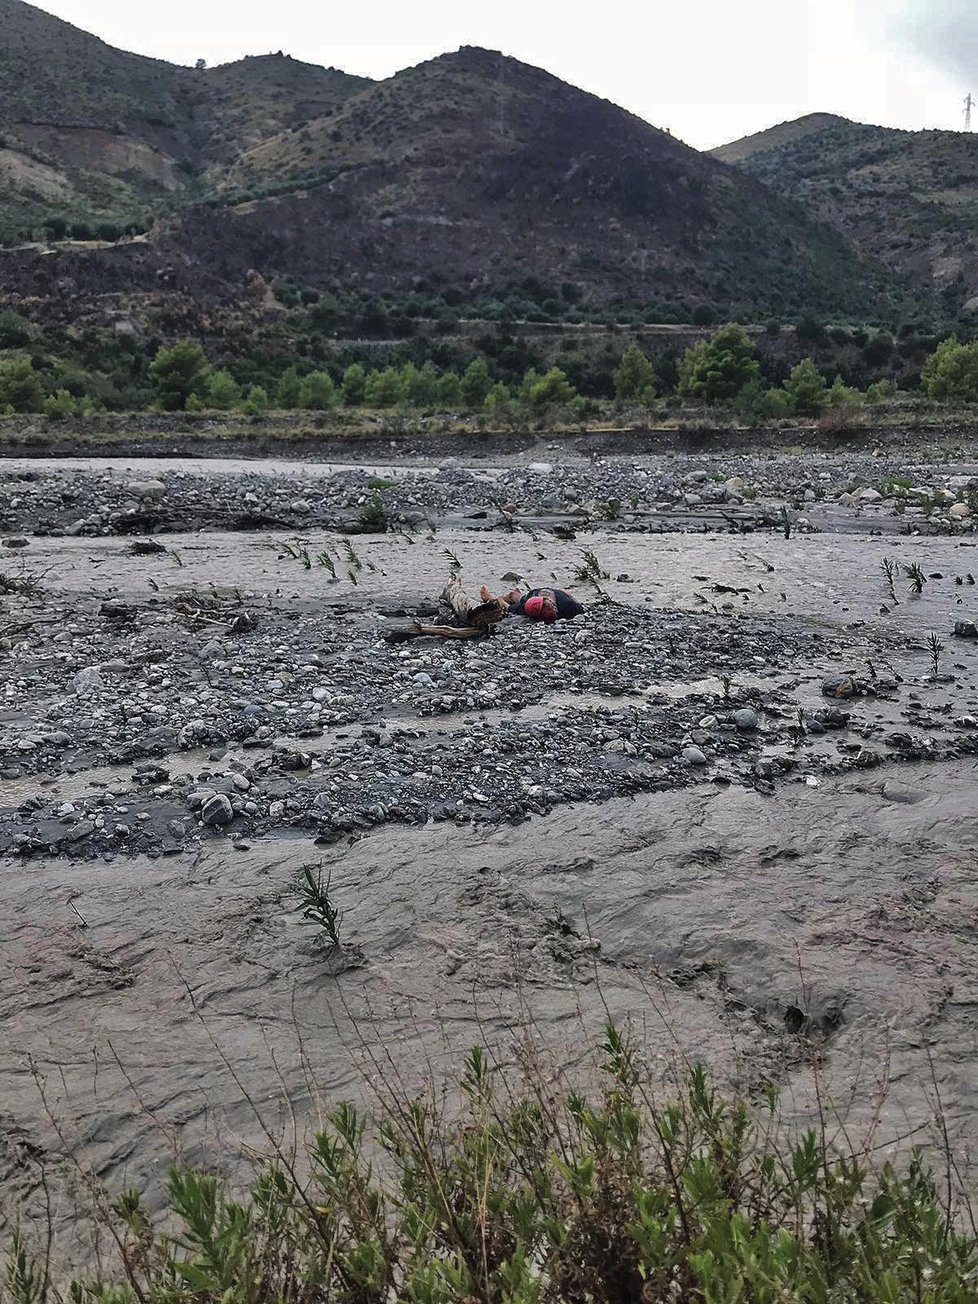 Na jihu Itálie kvůli rozvodněné řece zemřelo nejméně 10 lidí. Zachráněných je 23